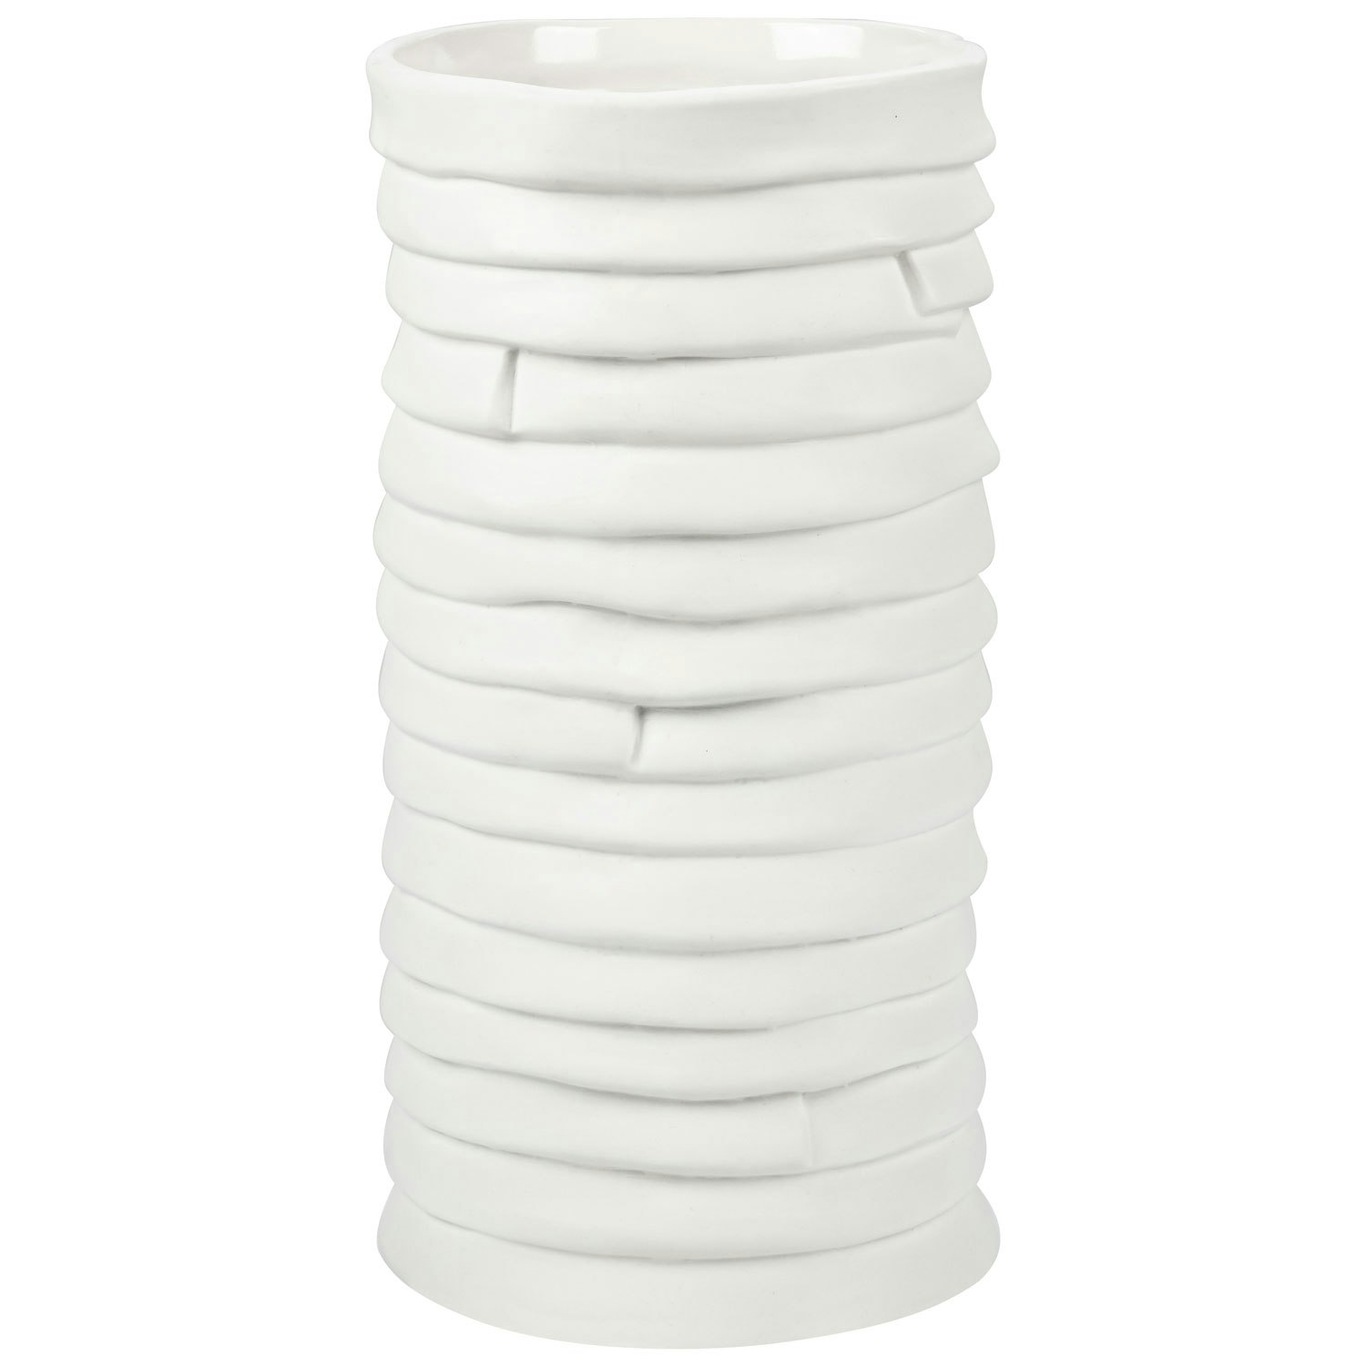 RIBBON Vase Off-white, Large